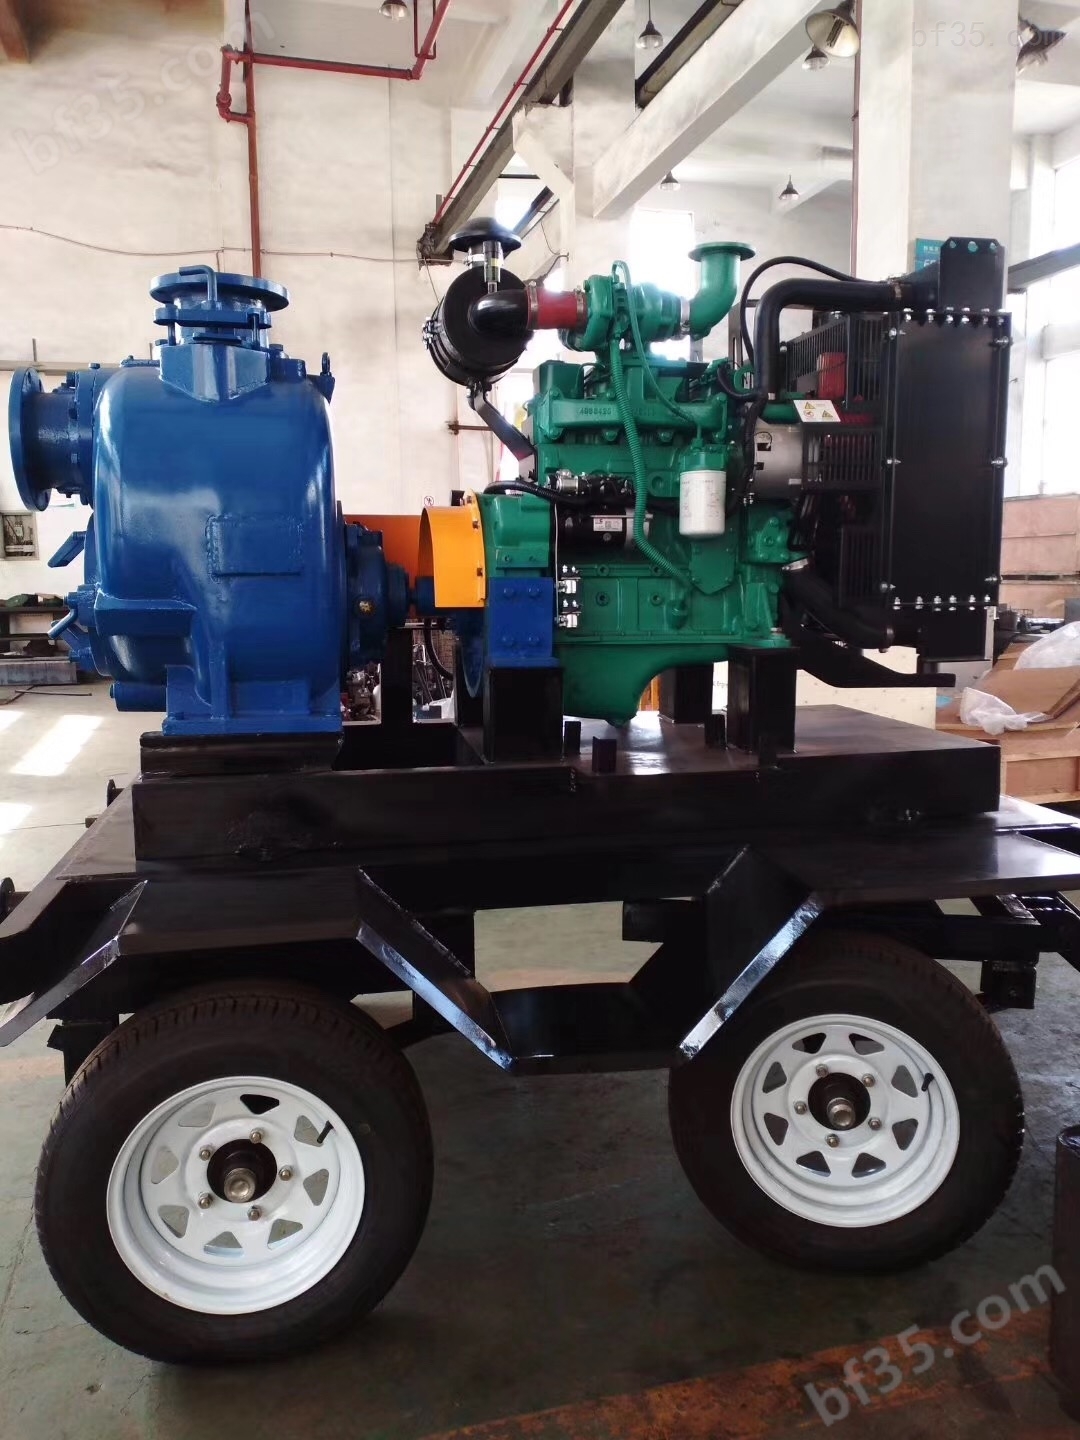 SP-6型拖车式柴油机自吸排污泵